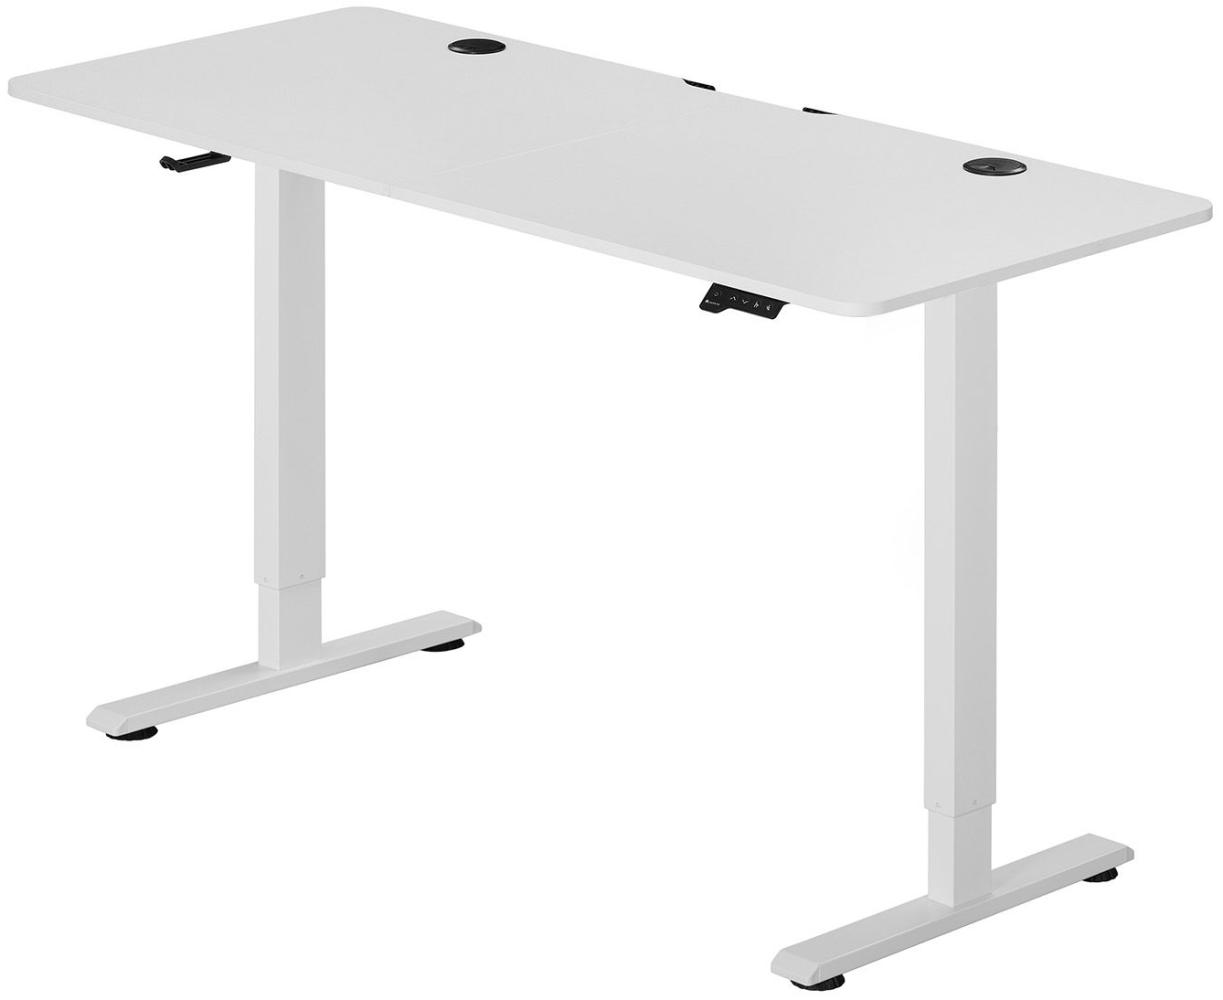 Juskys Höhenverstellbarer Schreibtisch, Metall, Holz, weiß, 140 x 60 cm Bild 1